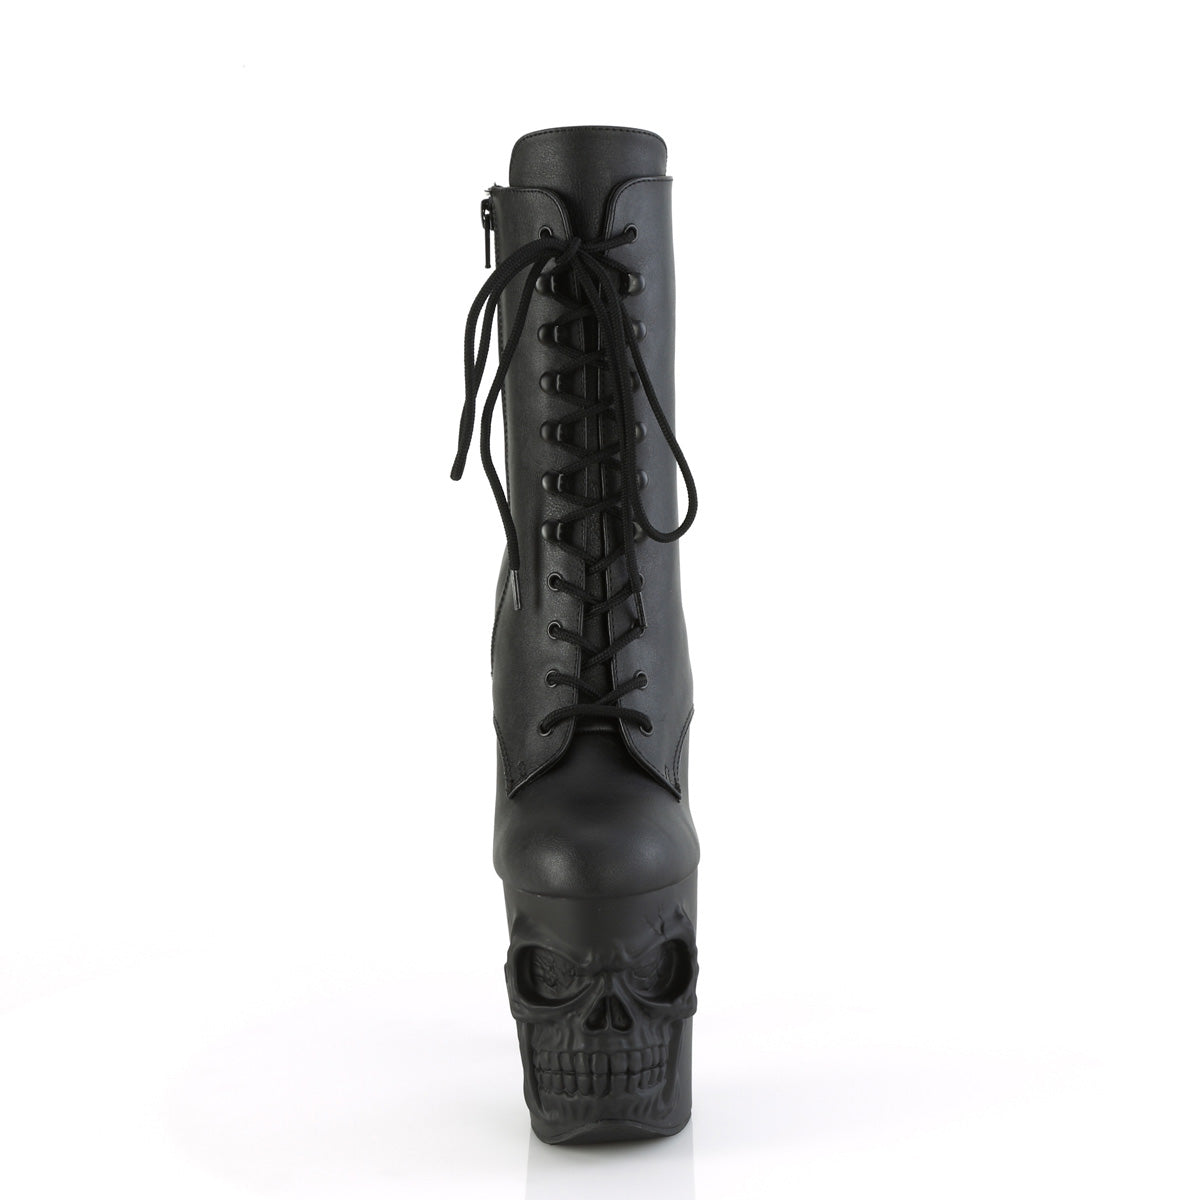 Skeleton Boots Rapture-1020 Black PU